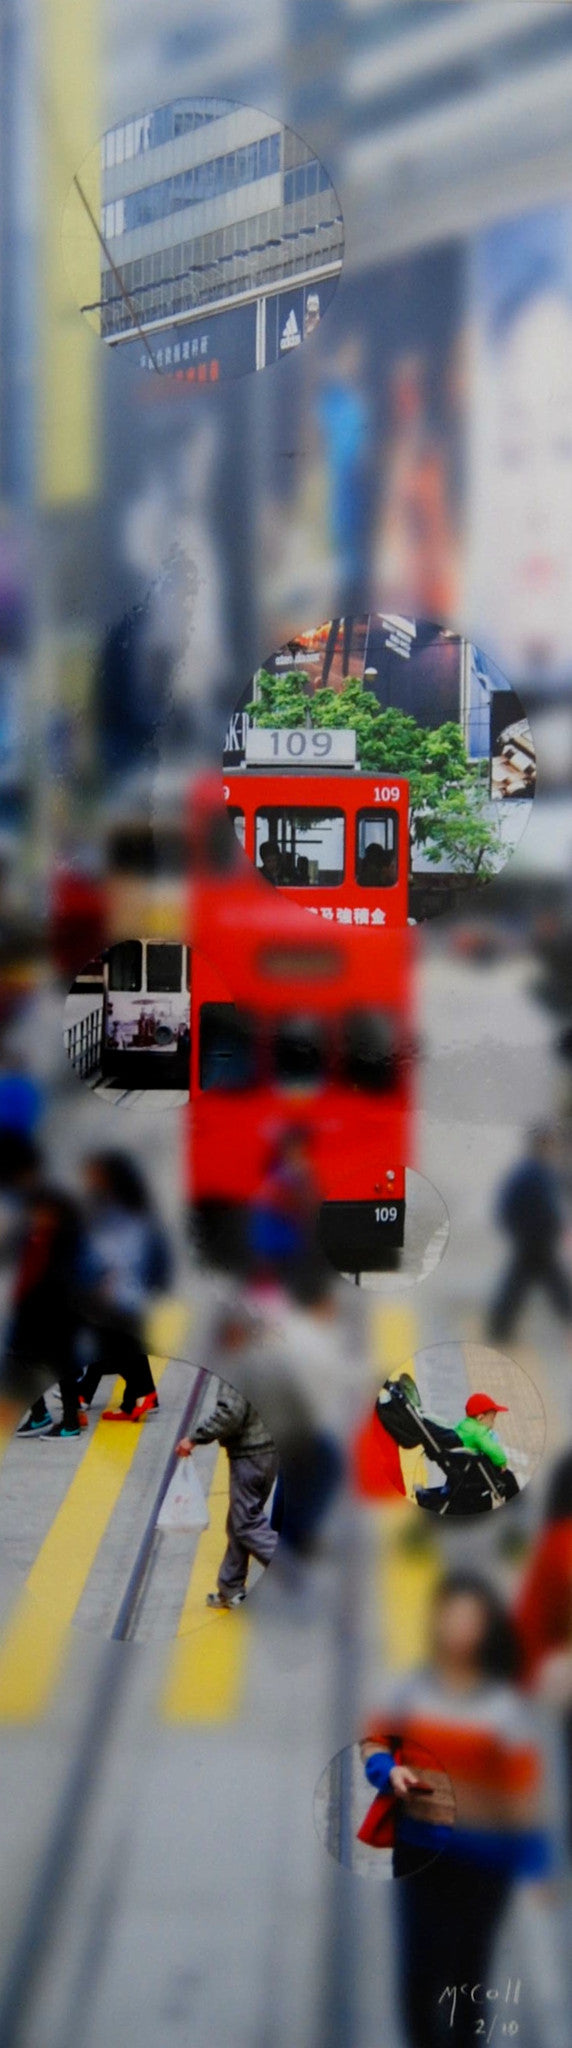 Red Tram 109